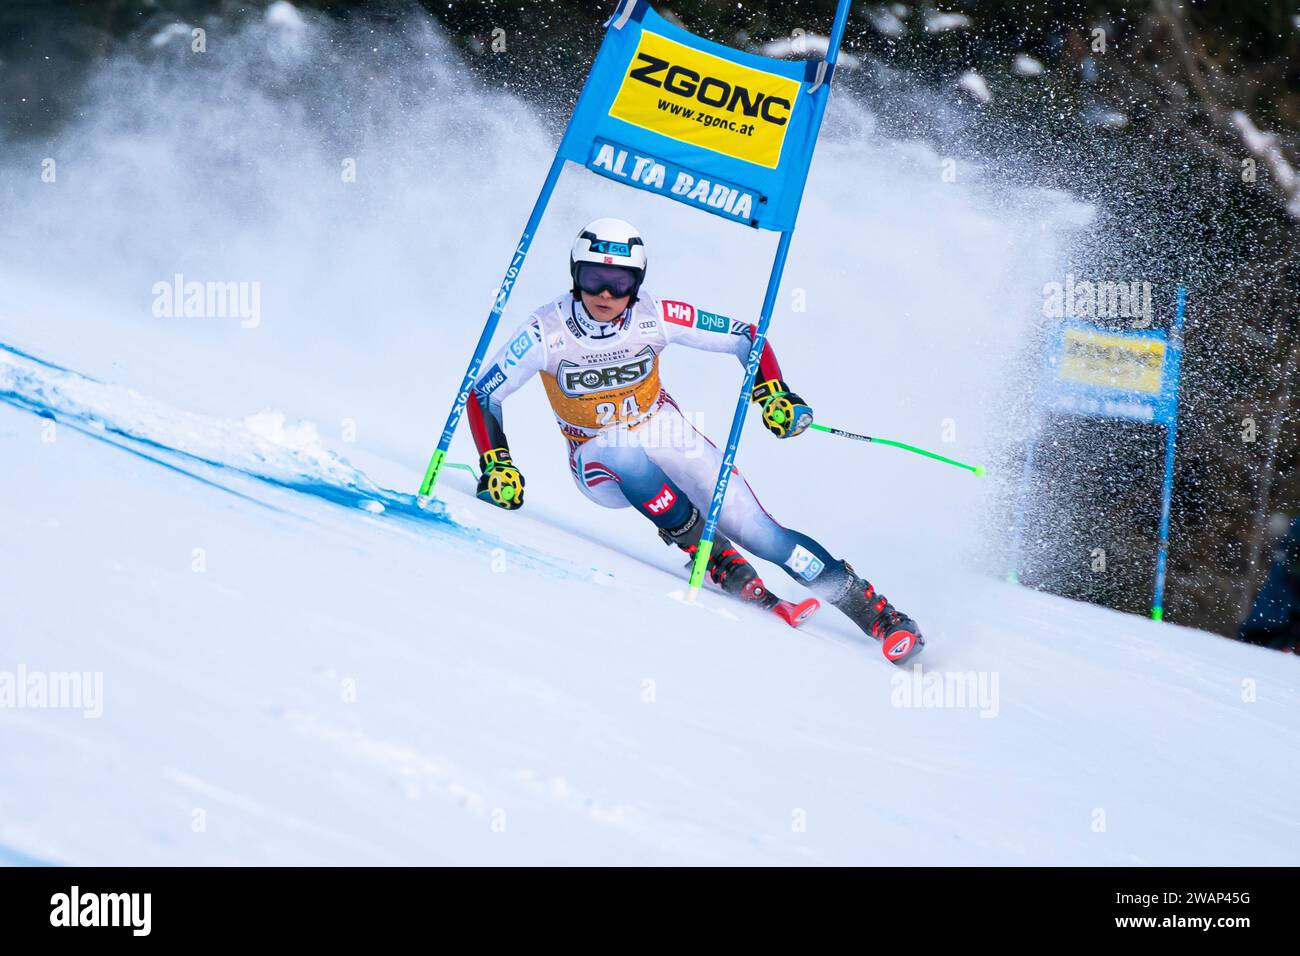 Alta Badia, Italia 17 dicembre 2023. STEEN OLSEN Alexander (NOR) gareggia nella Coppa del mondo di sci alpino Audi Fis 2023-24 Slalom gigante maschile sulla GR Foto Stock